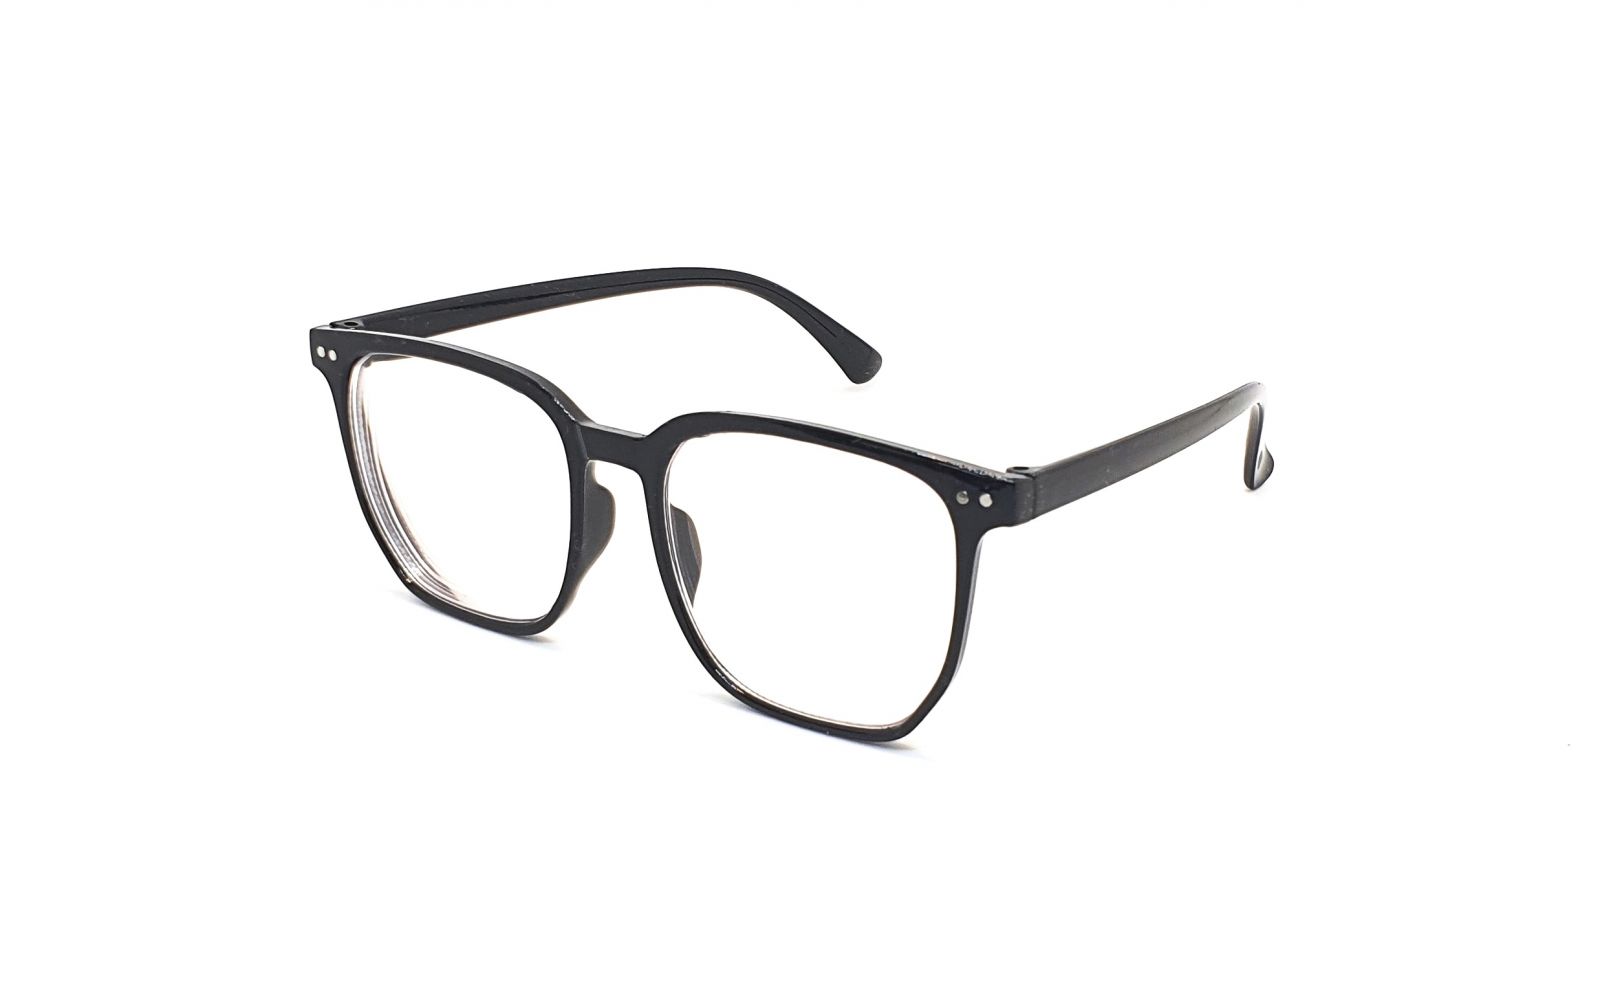 Samozabarvovací dioptrické brýle F24 / -5,50 black